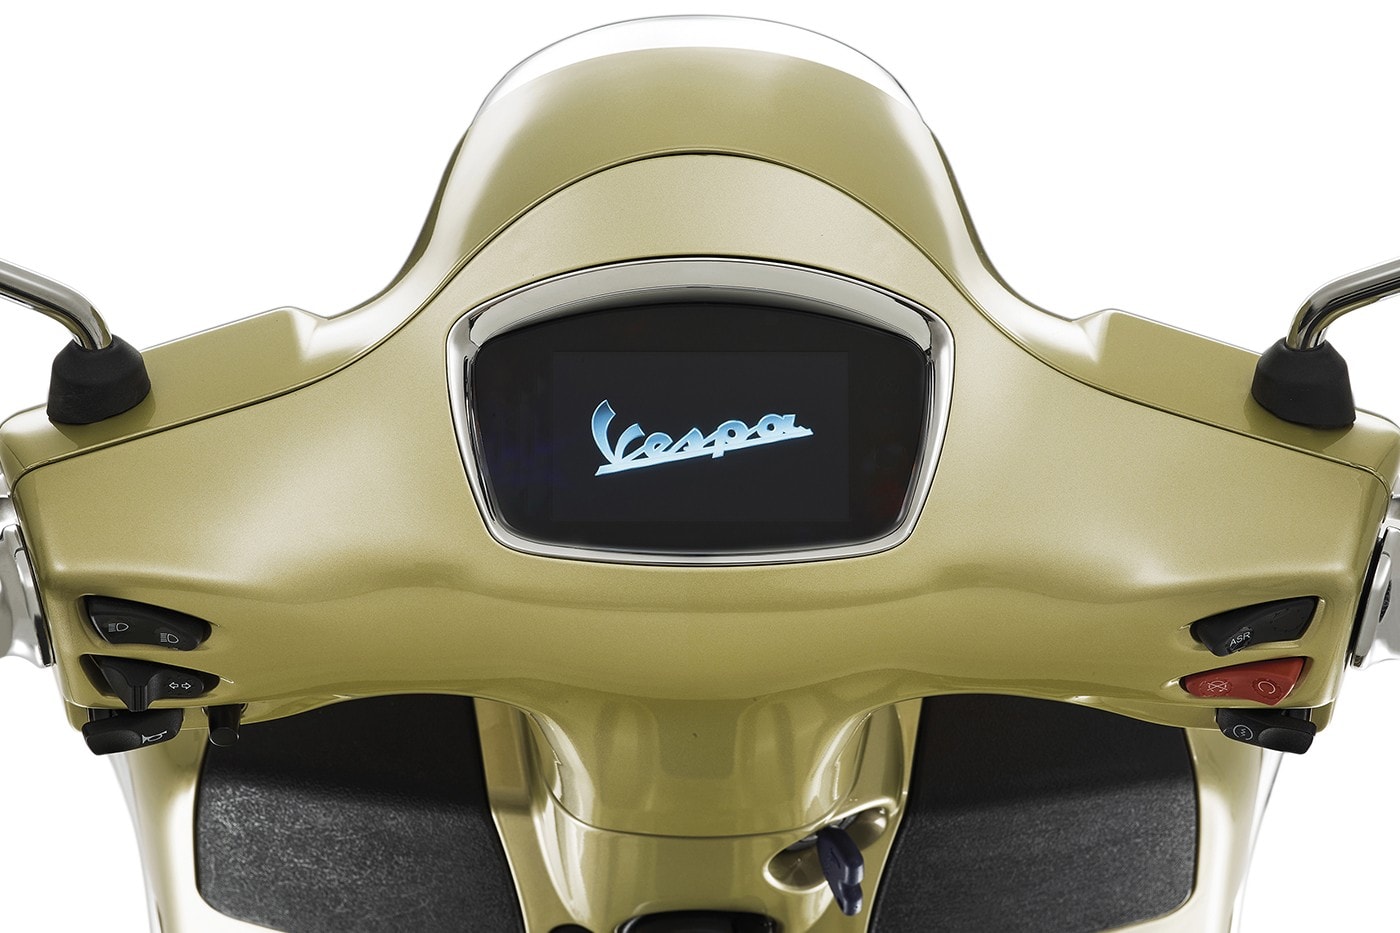 Vespa 發表 75 週年全新 Primavera、GTS 別注車型